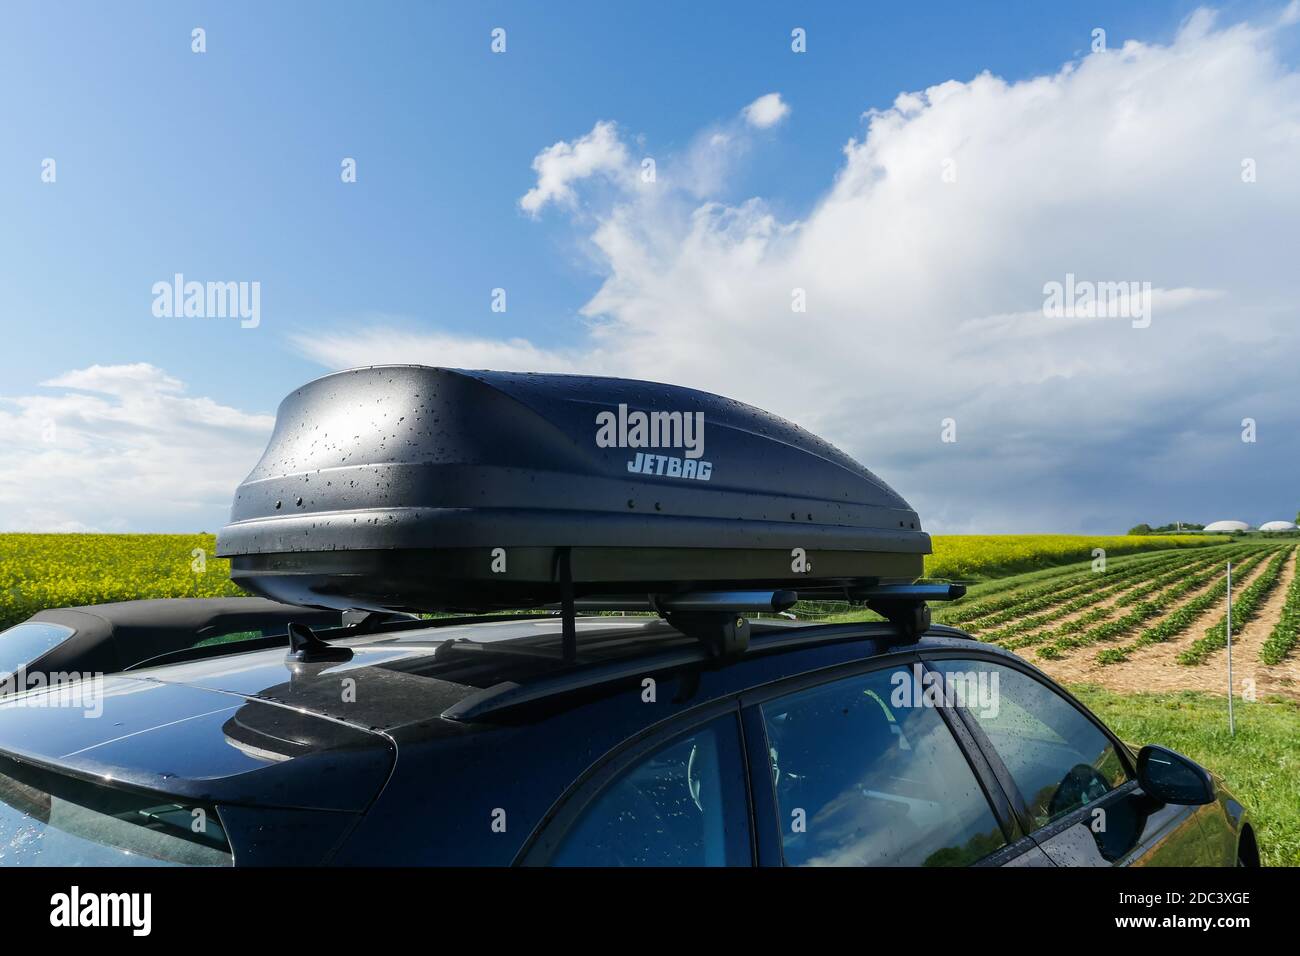 Voiture Jetbag coffre de stockage sur le toit dans le champ agricole en  plein air ensoleillé Photo Stock - Alamy